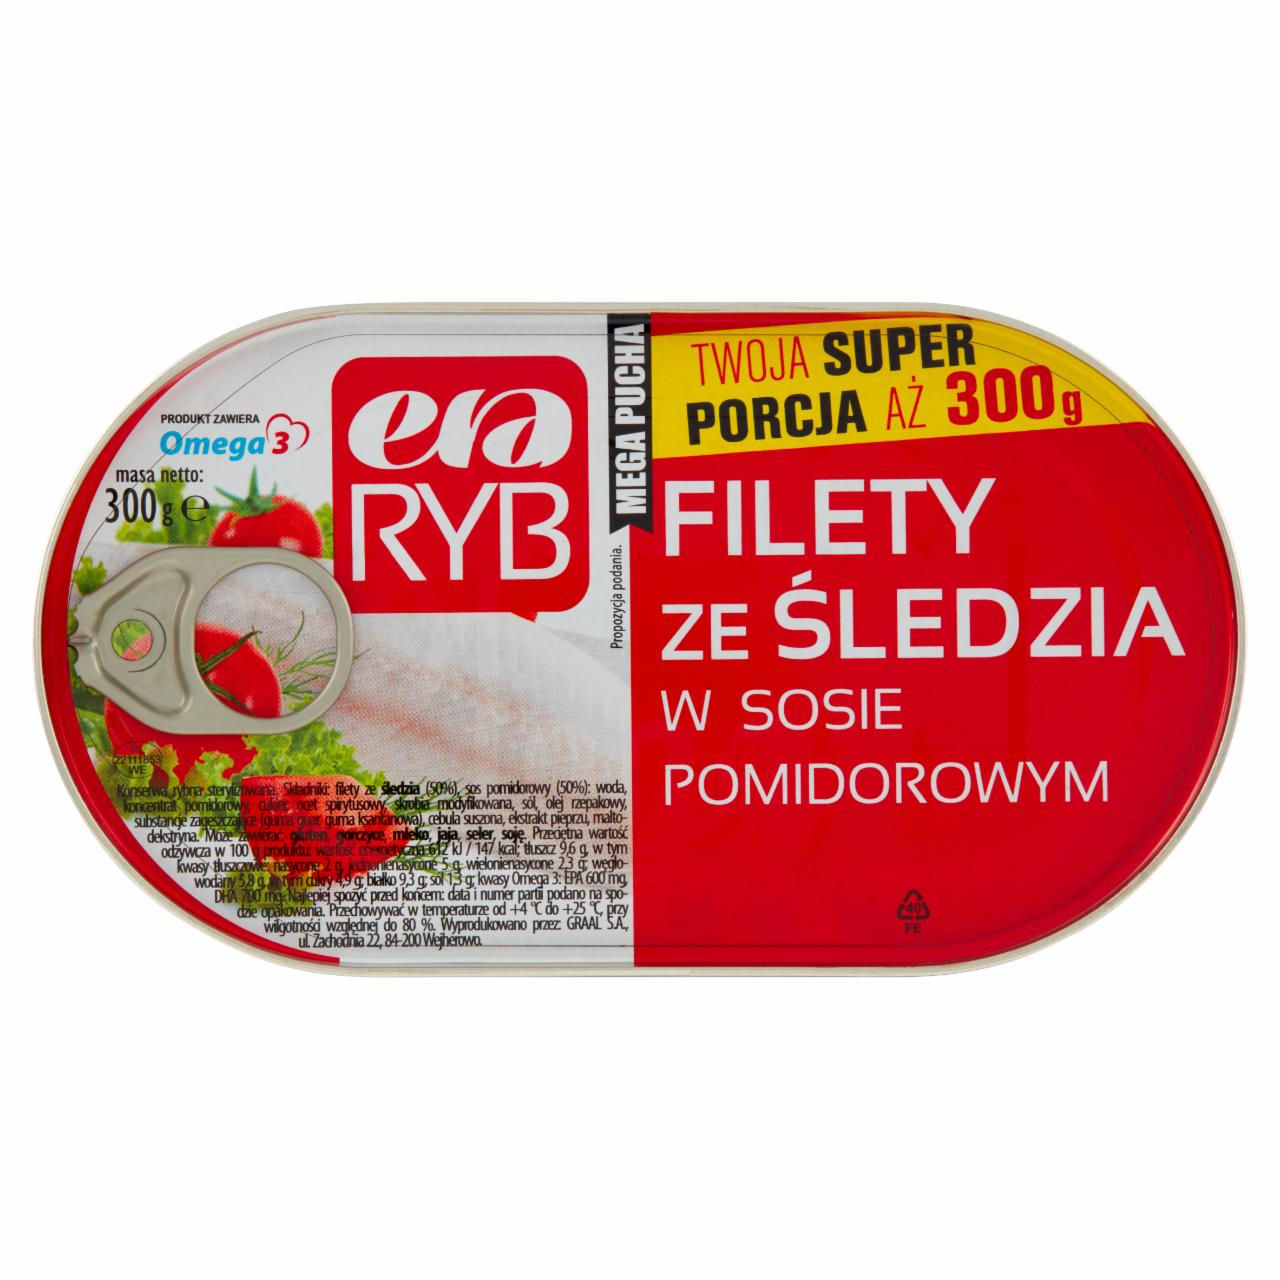 Zdjęcia - Era Ryb Filety ze śledzia w sosie pomidorowym 300 g